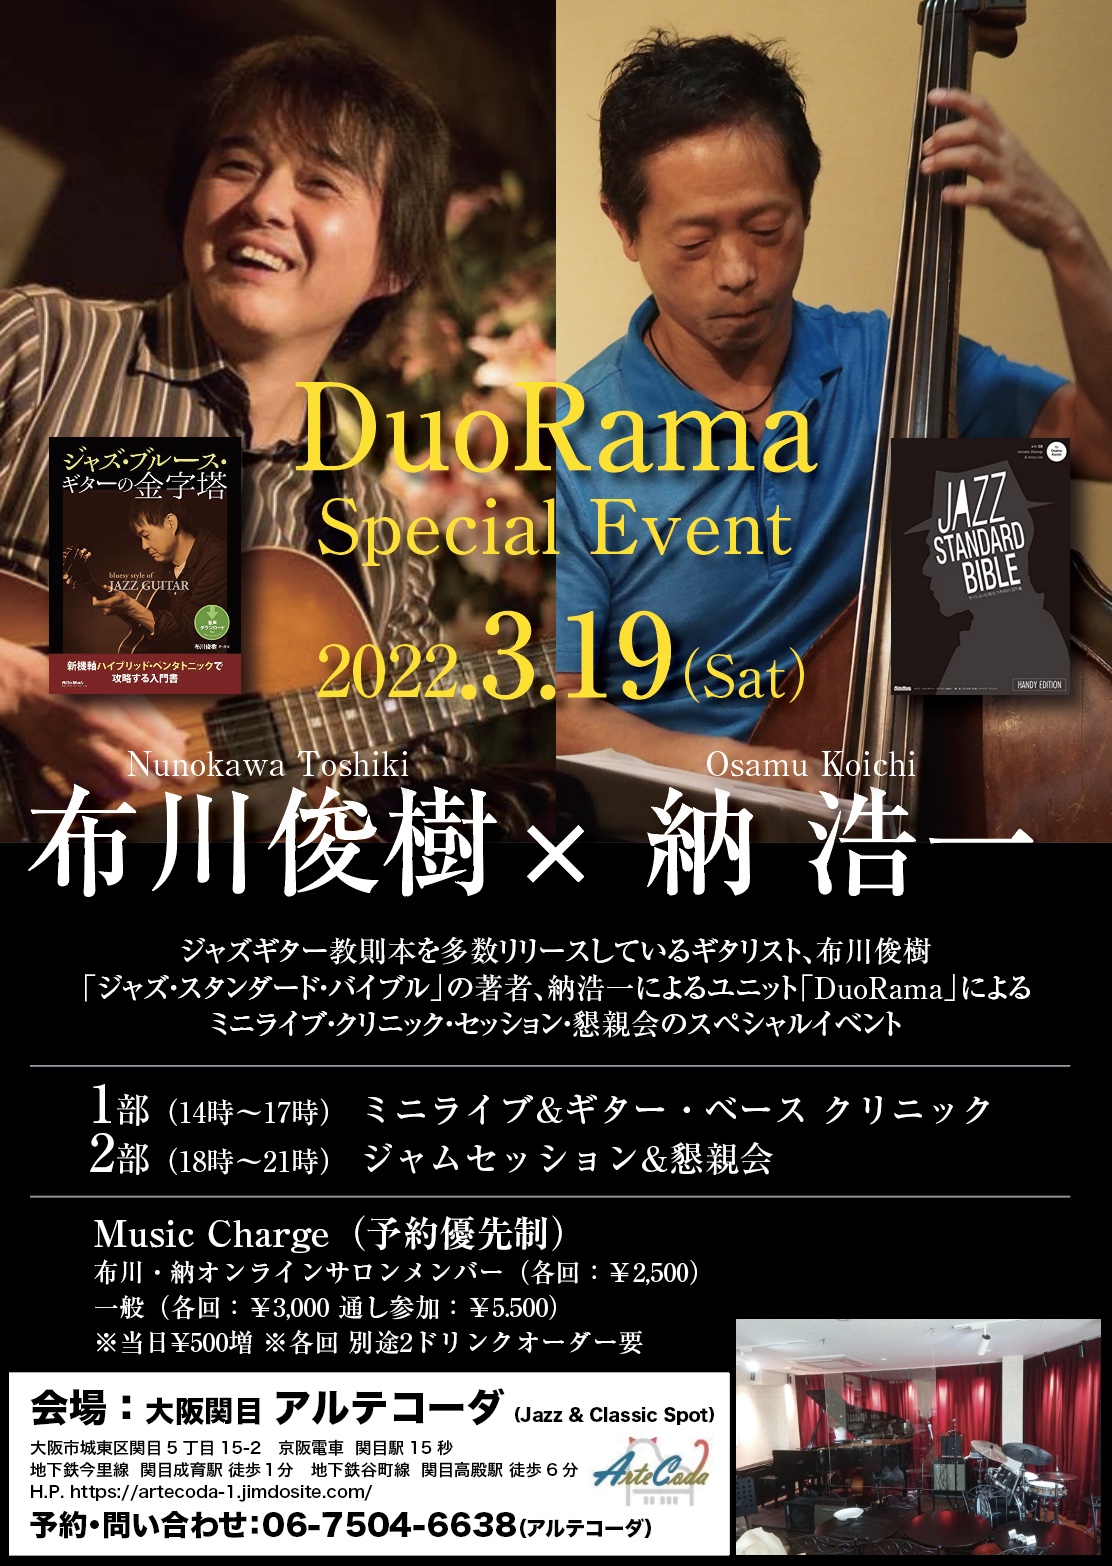 ジャズ・スタンダード・バイブル 納浩一さん&布川俊樹さん（Duorama）が 大阪関目アルテコーダにてイベント